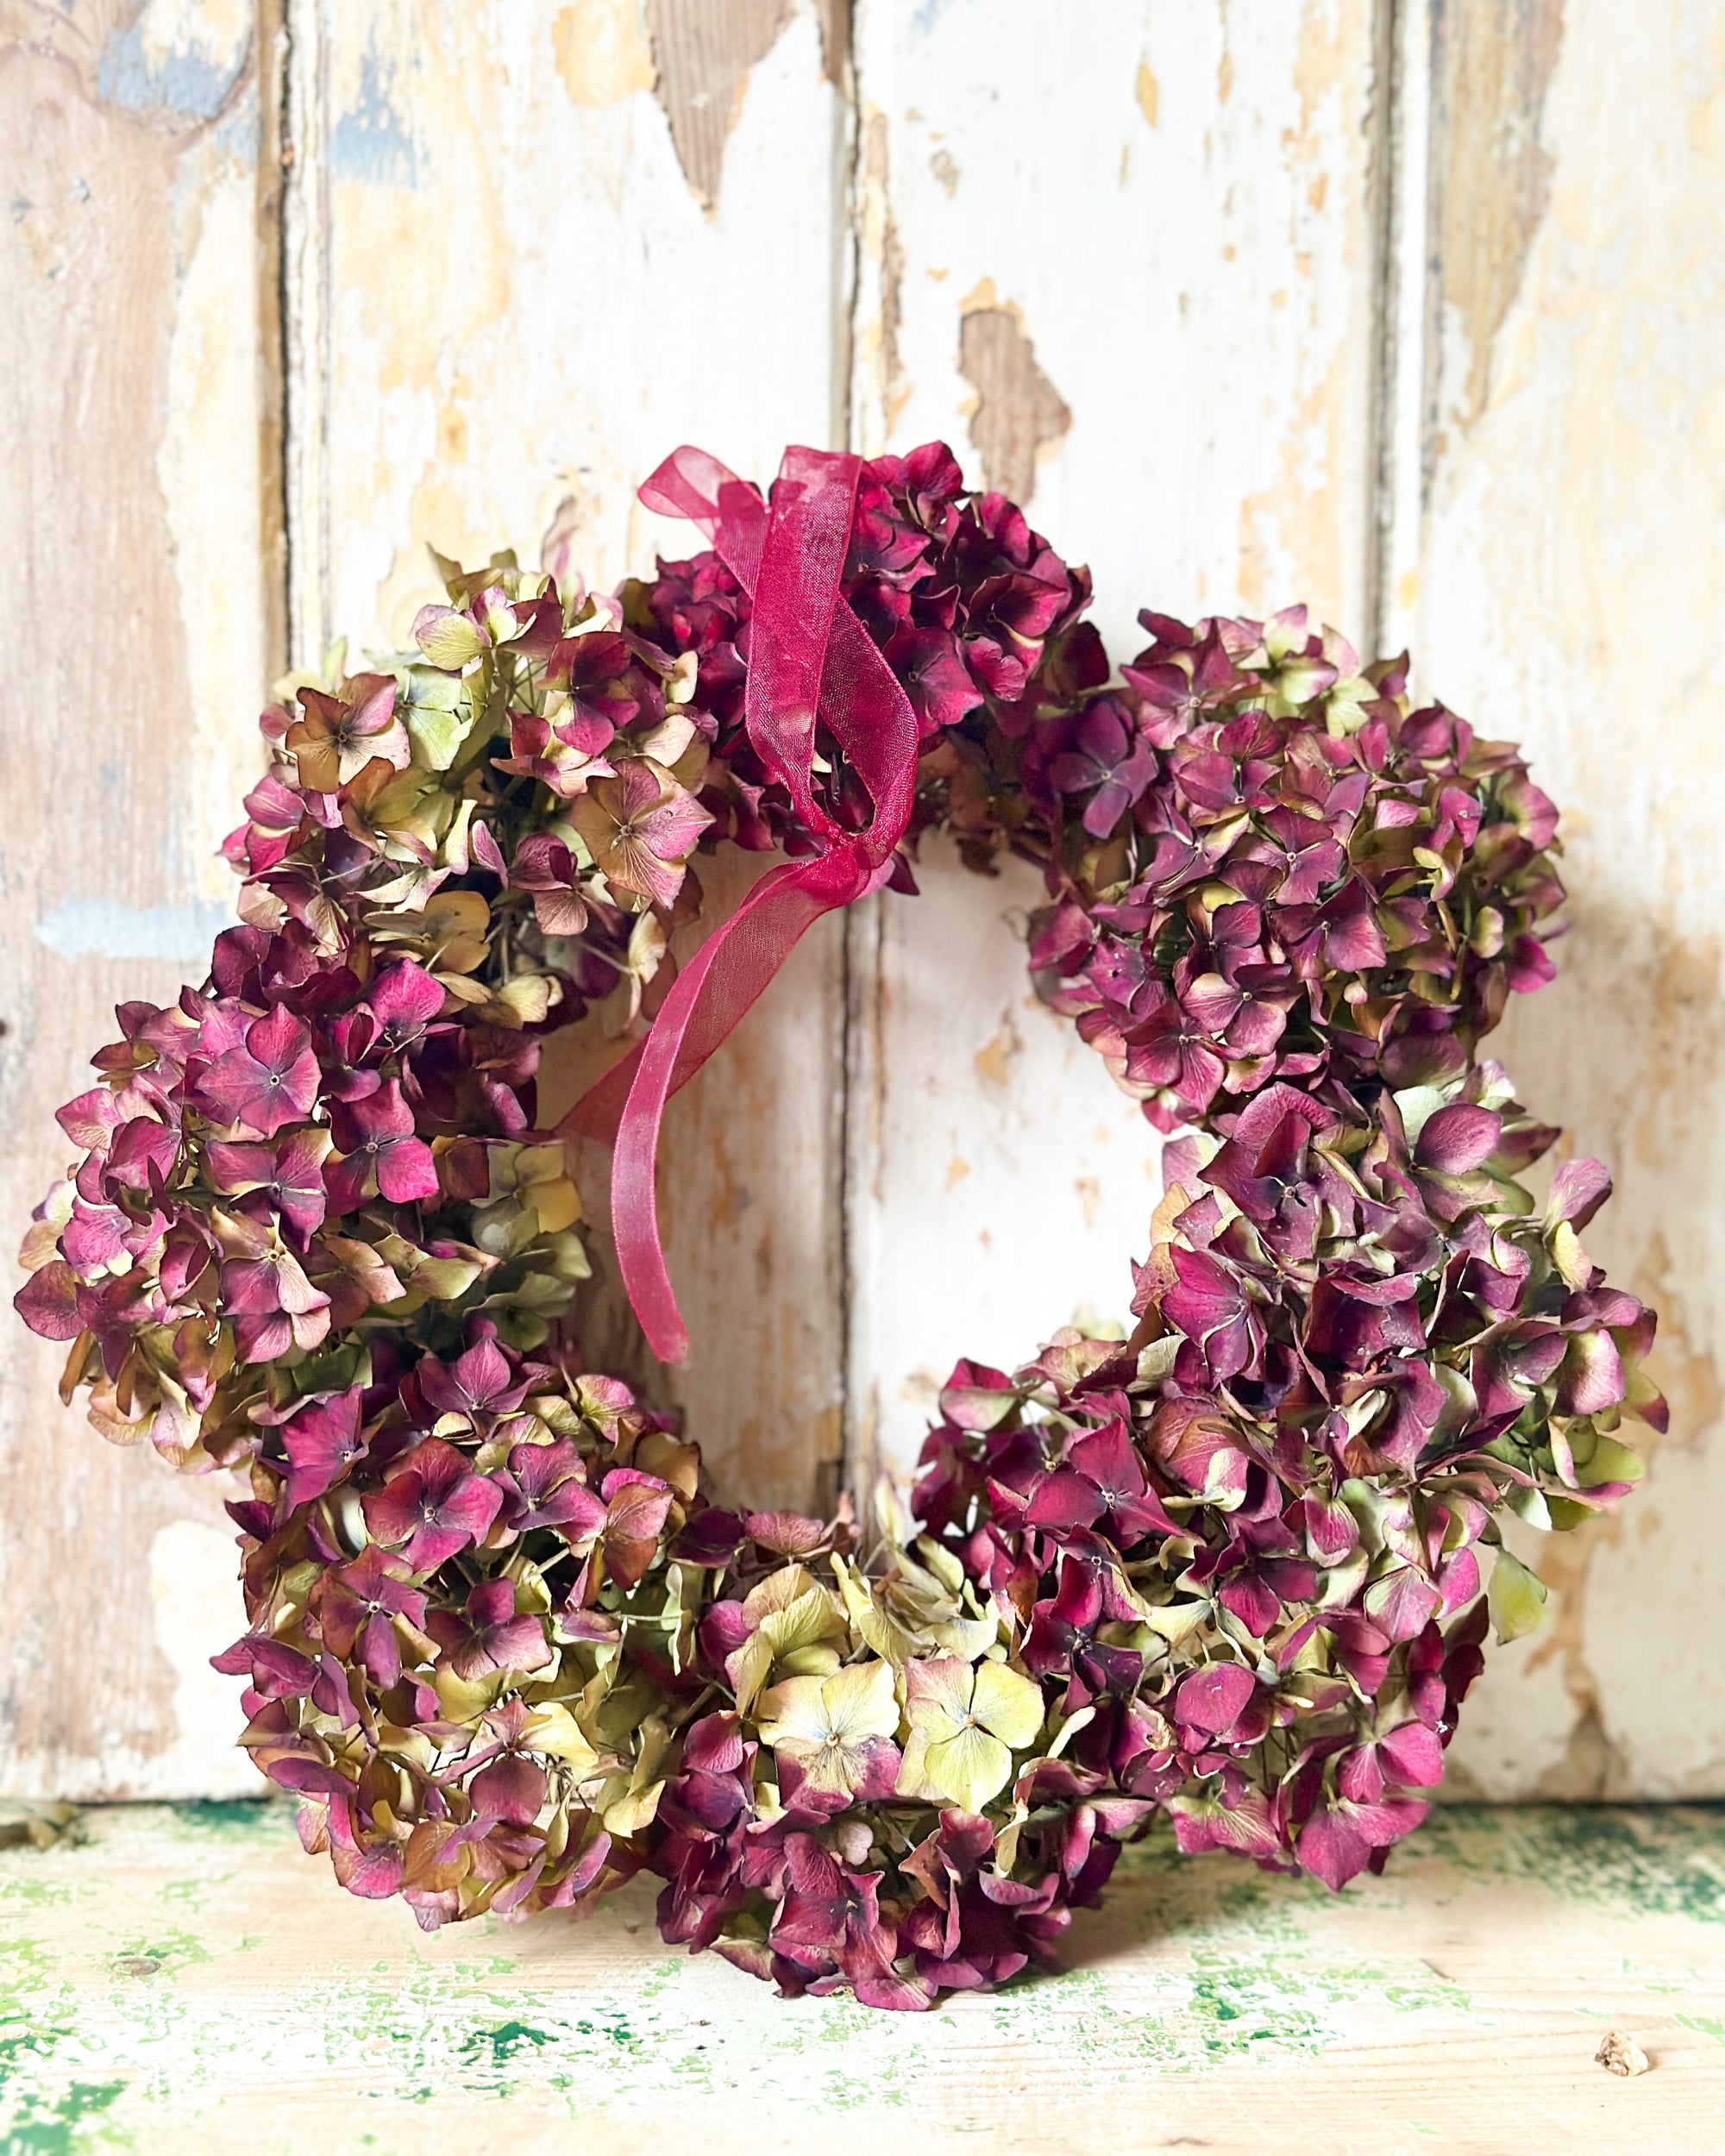 Dried hydrangea festive wreath